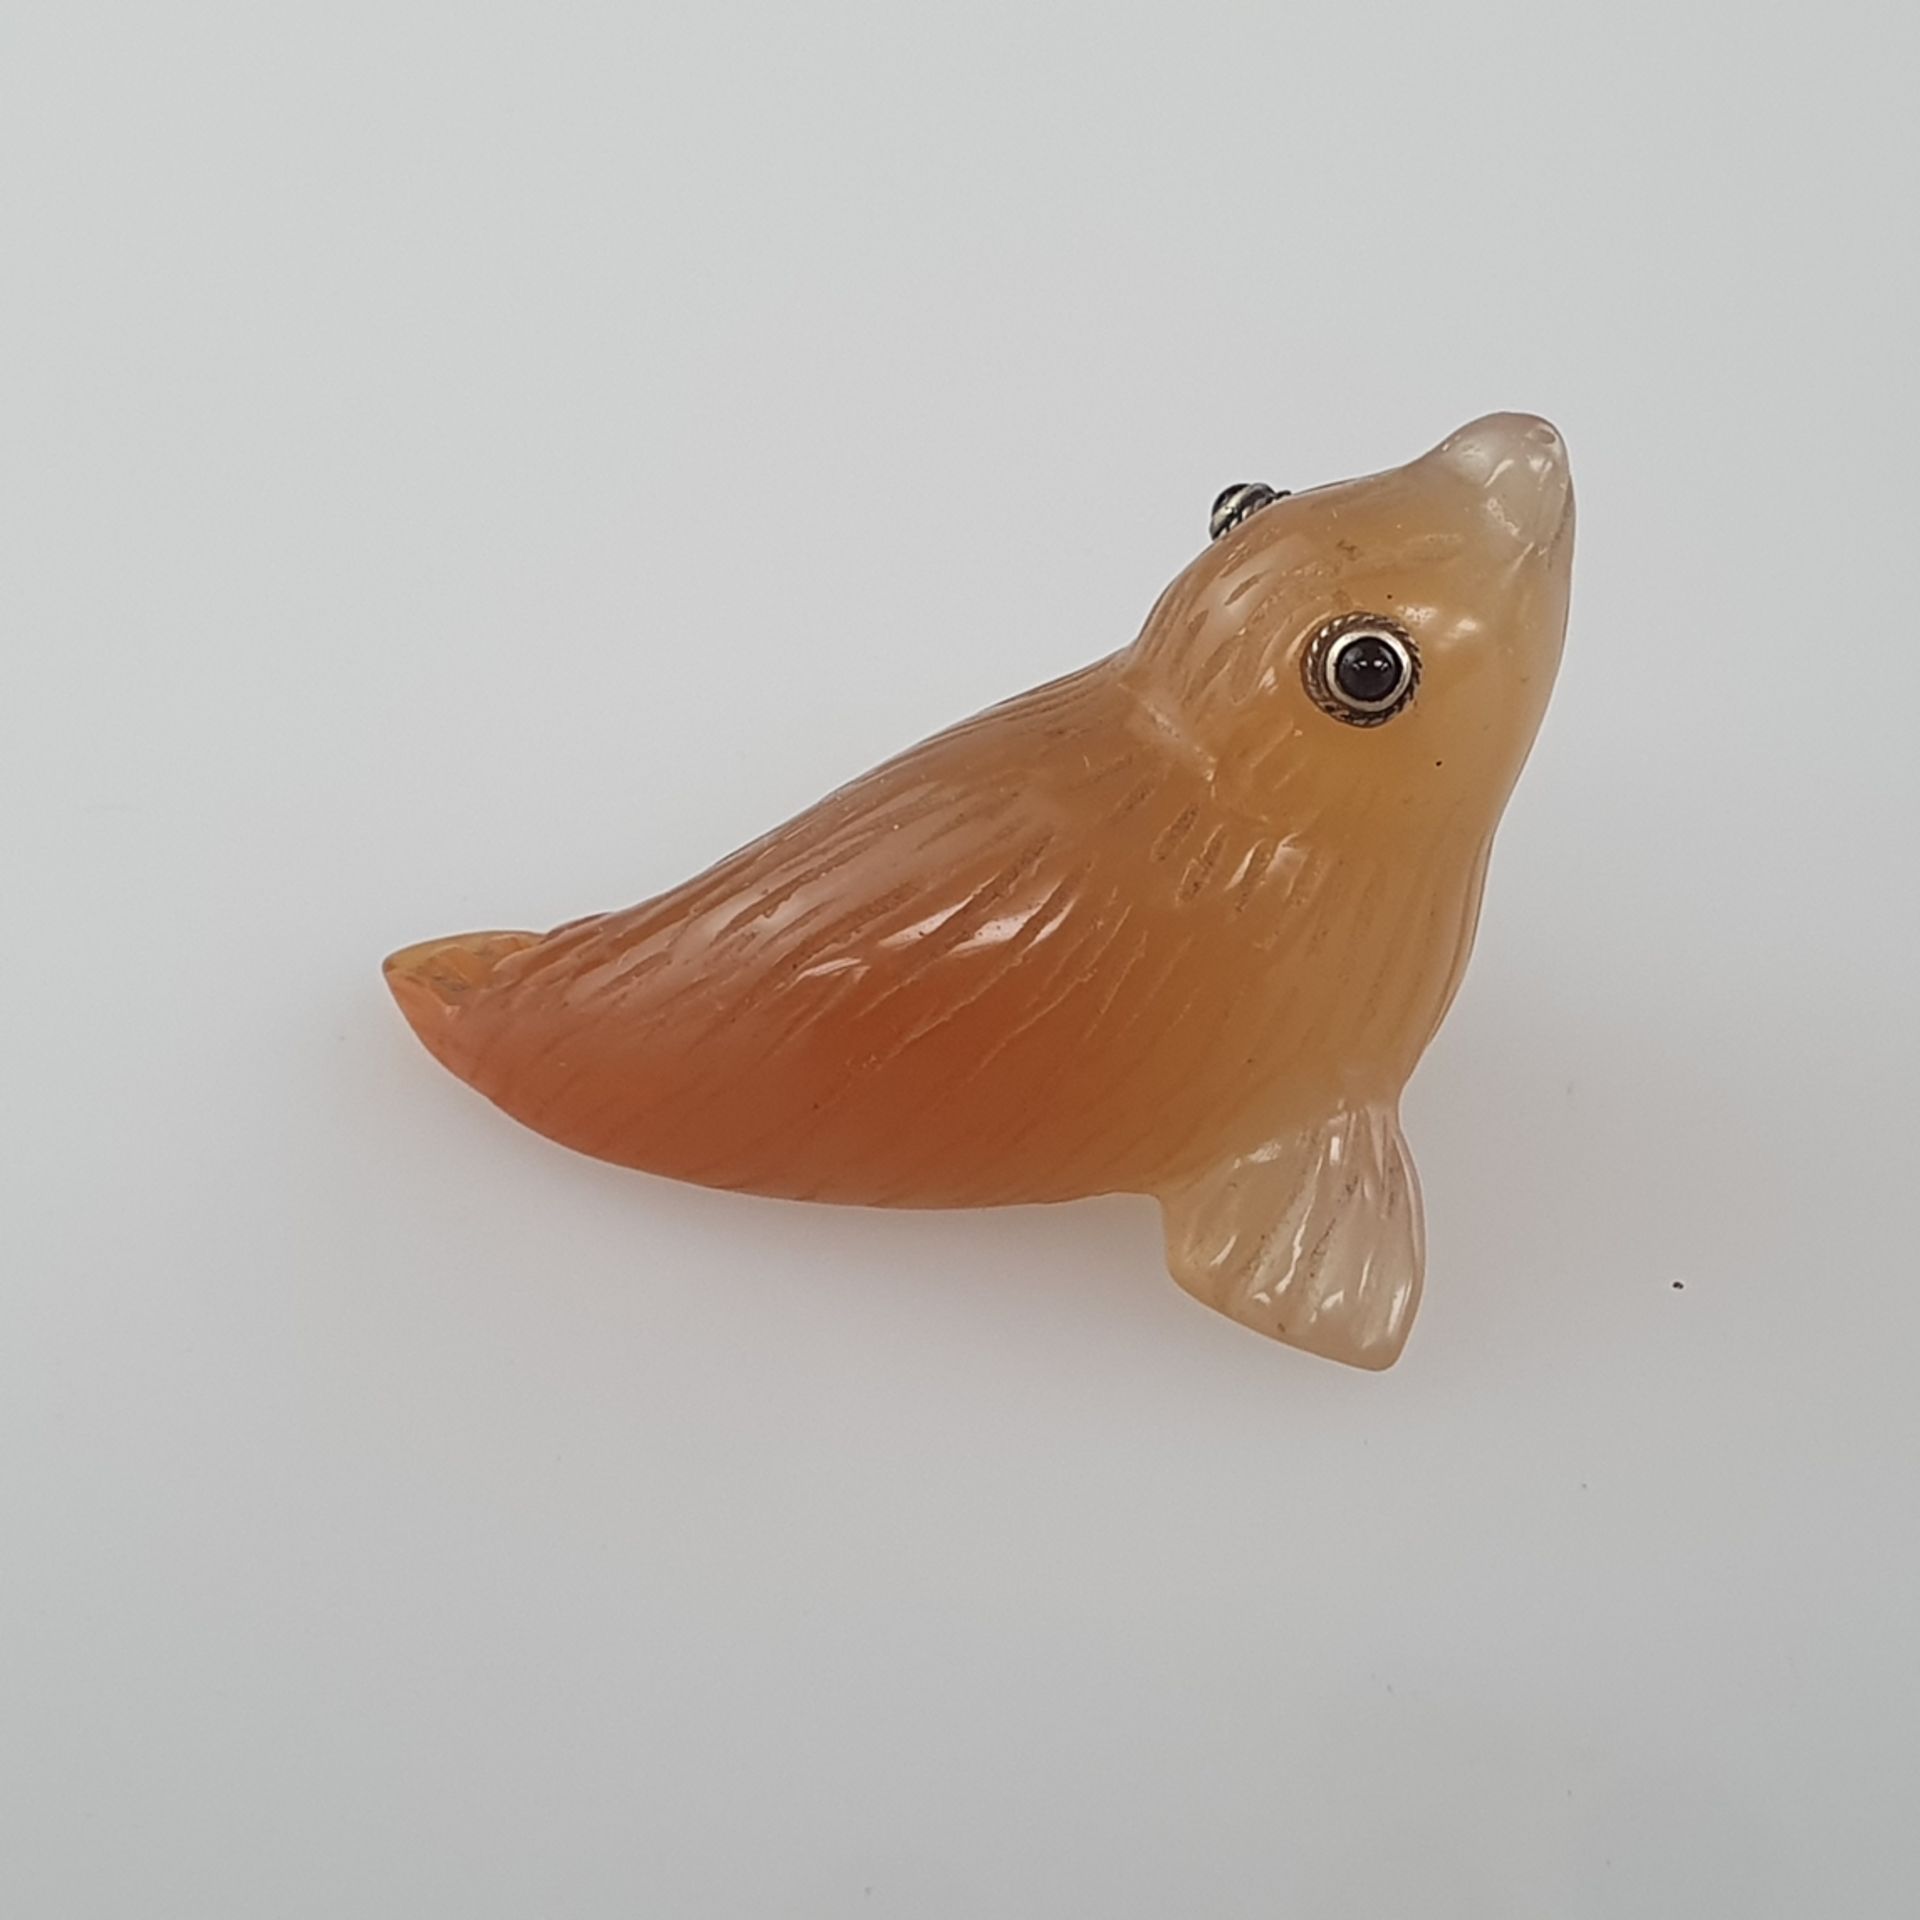 Miniatur-Tierfigur in der Art von Fabergé - vollrunde Achatschnitzerei in Gestalt eines Seehundes,  - Bild 3 aus 8